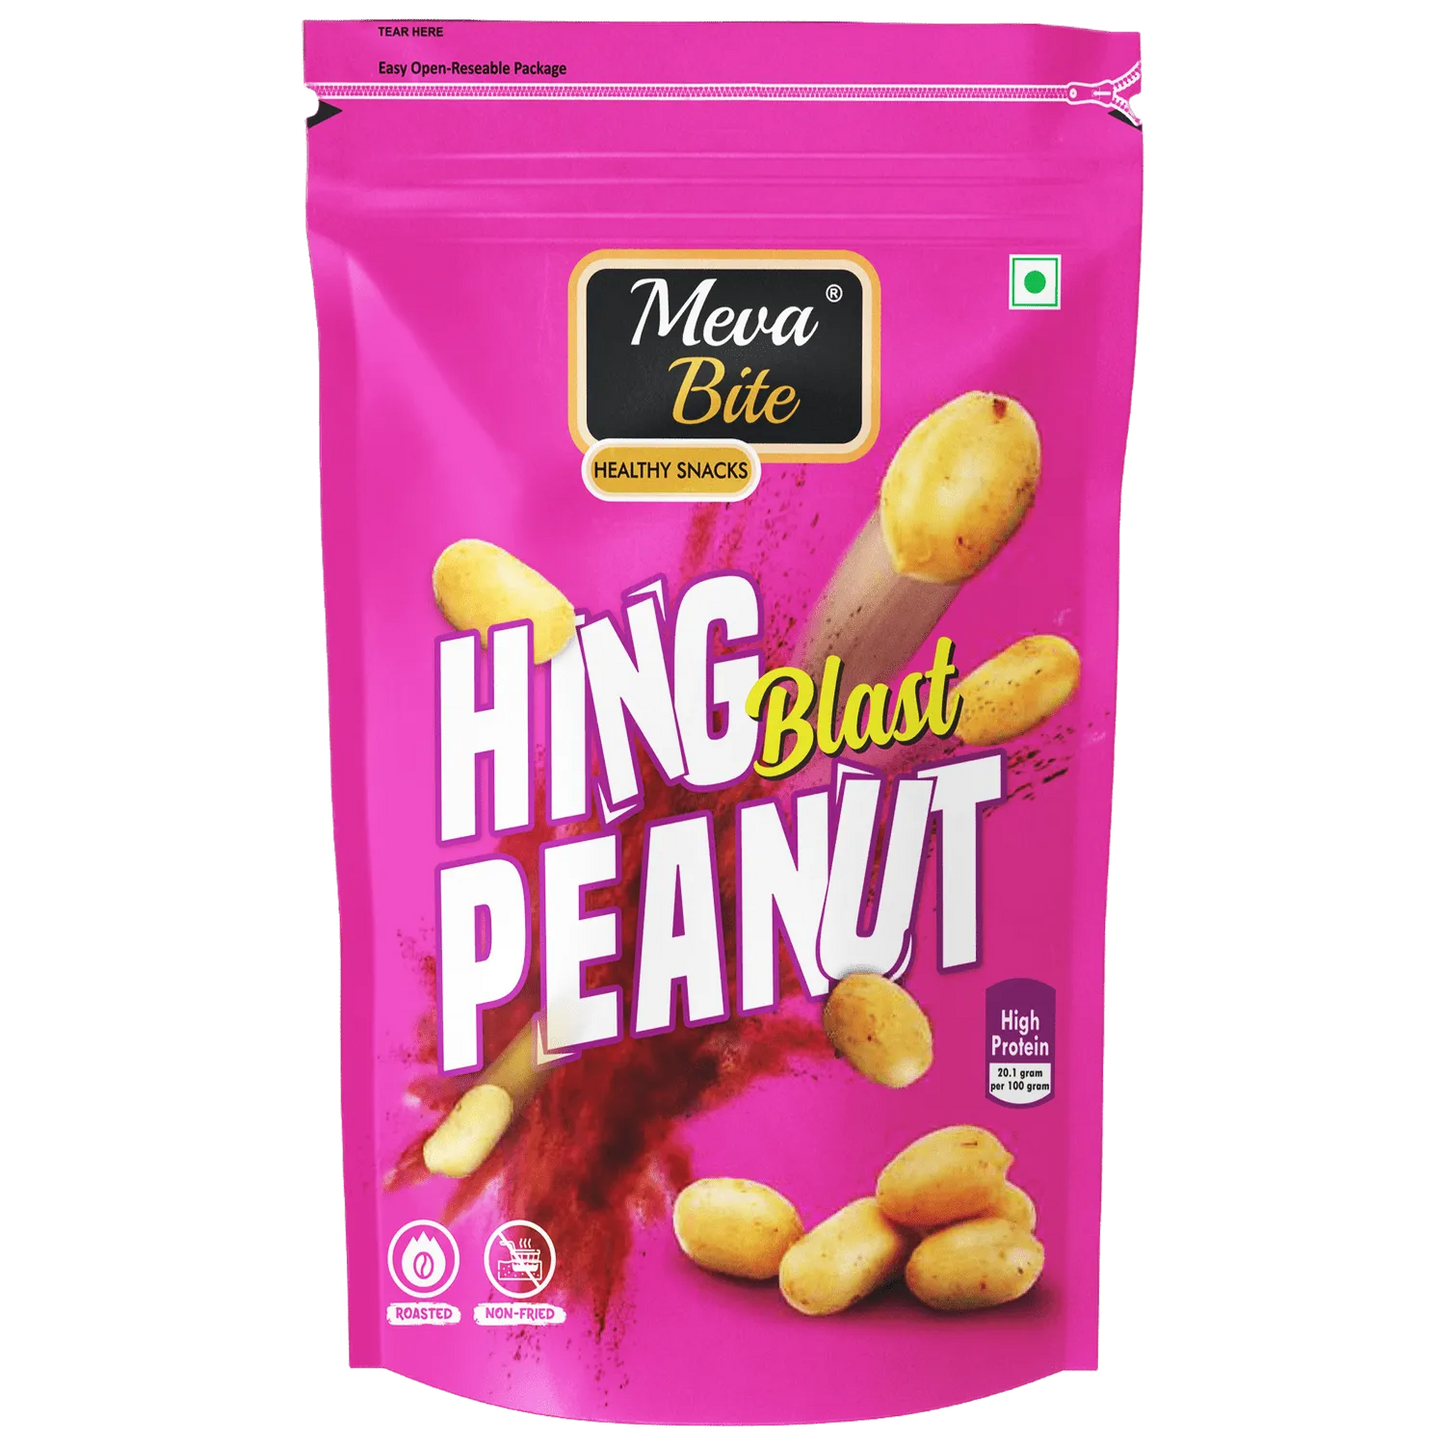 Hing Blast Peanut, Munching Range, Snack Foods, MevaBite